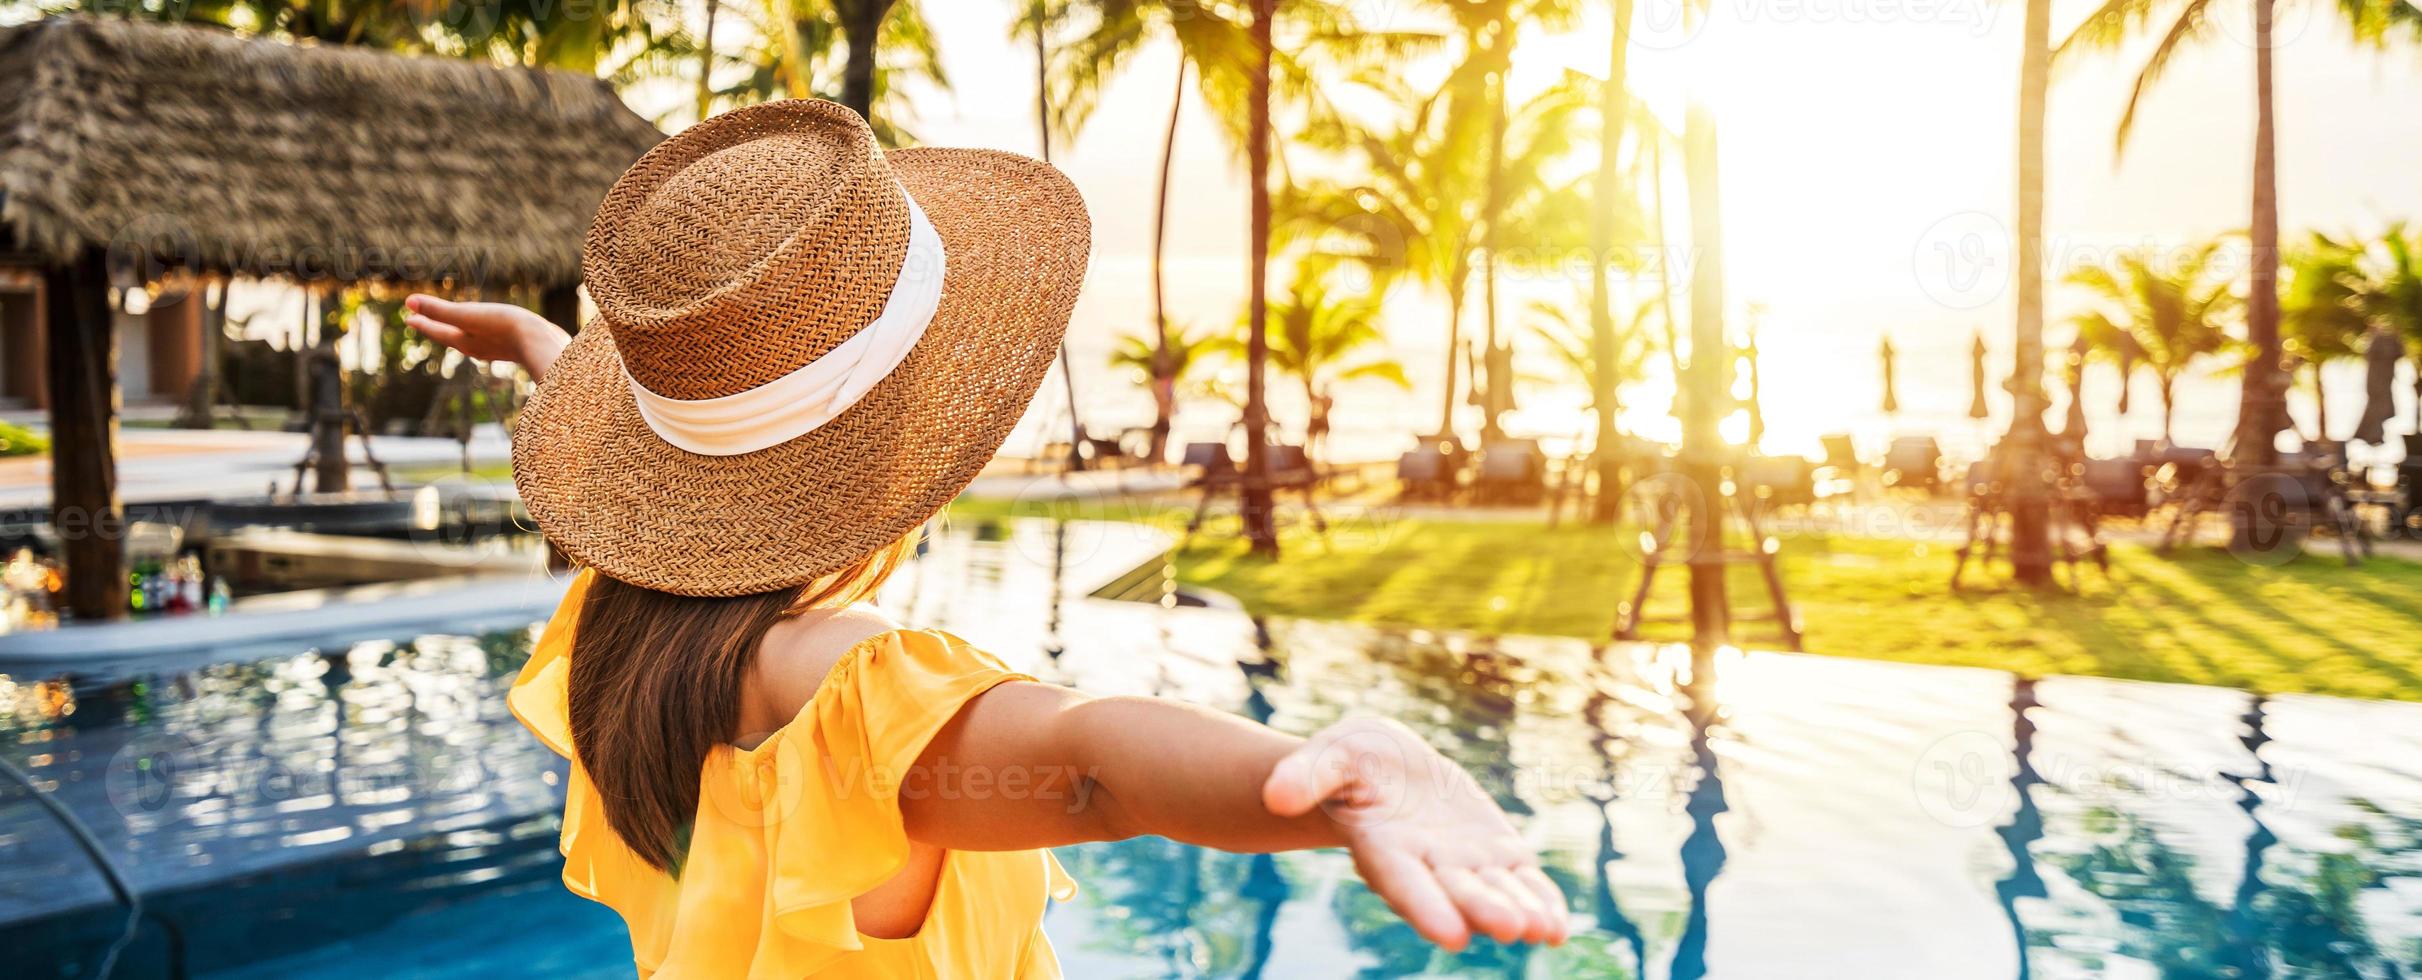 jonge vrouwelijke reiziger ontspannen en genieten van de zonsondergang bij een tropisch resortzwembad tijdens het reizen voor zomervakantie foto